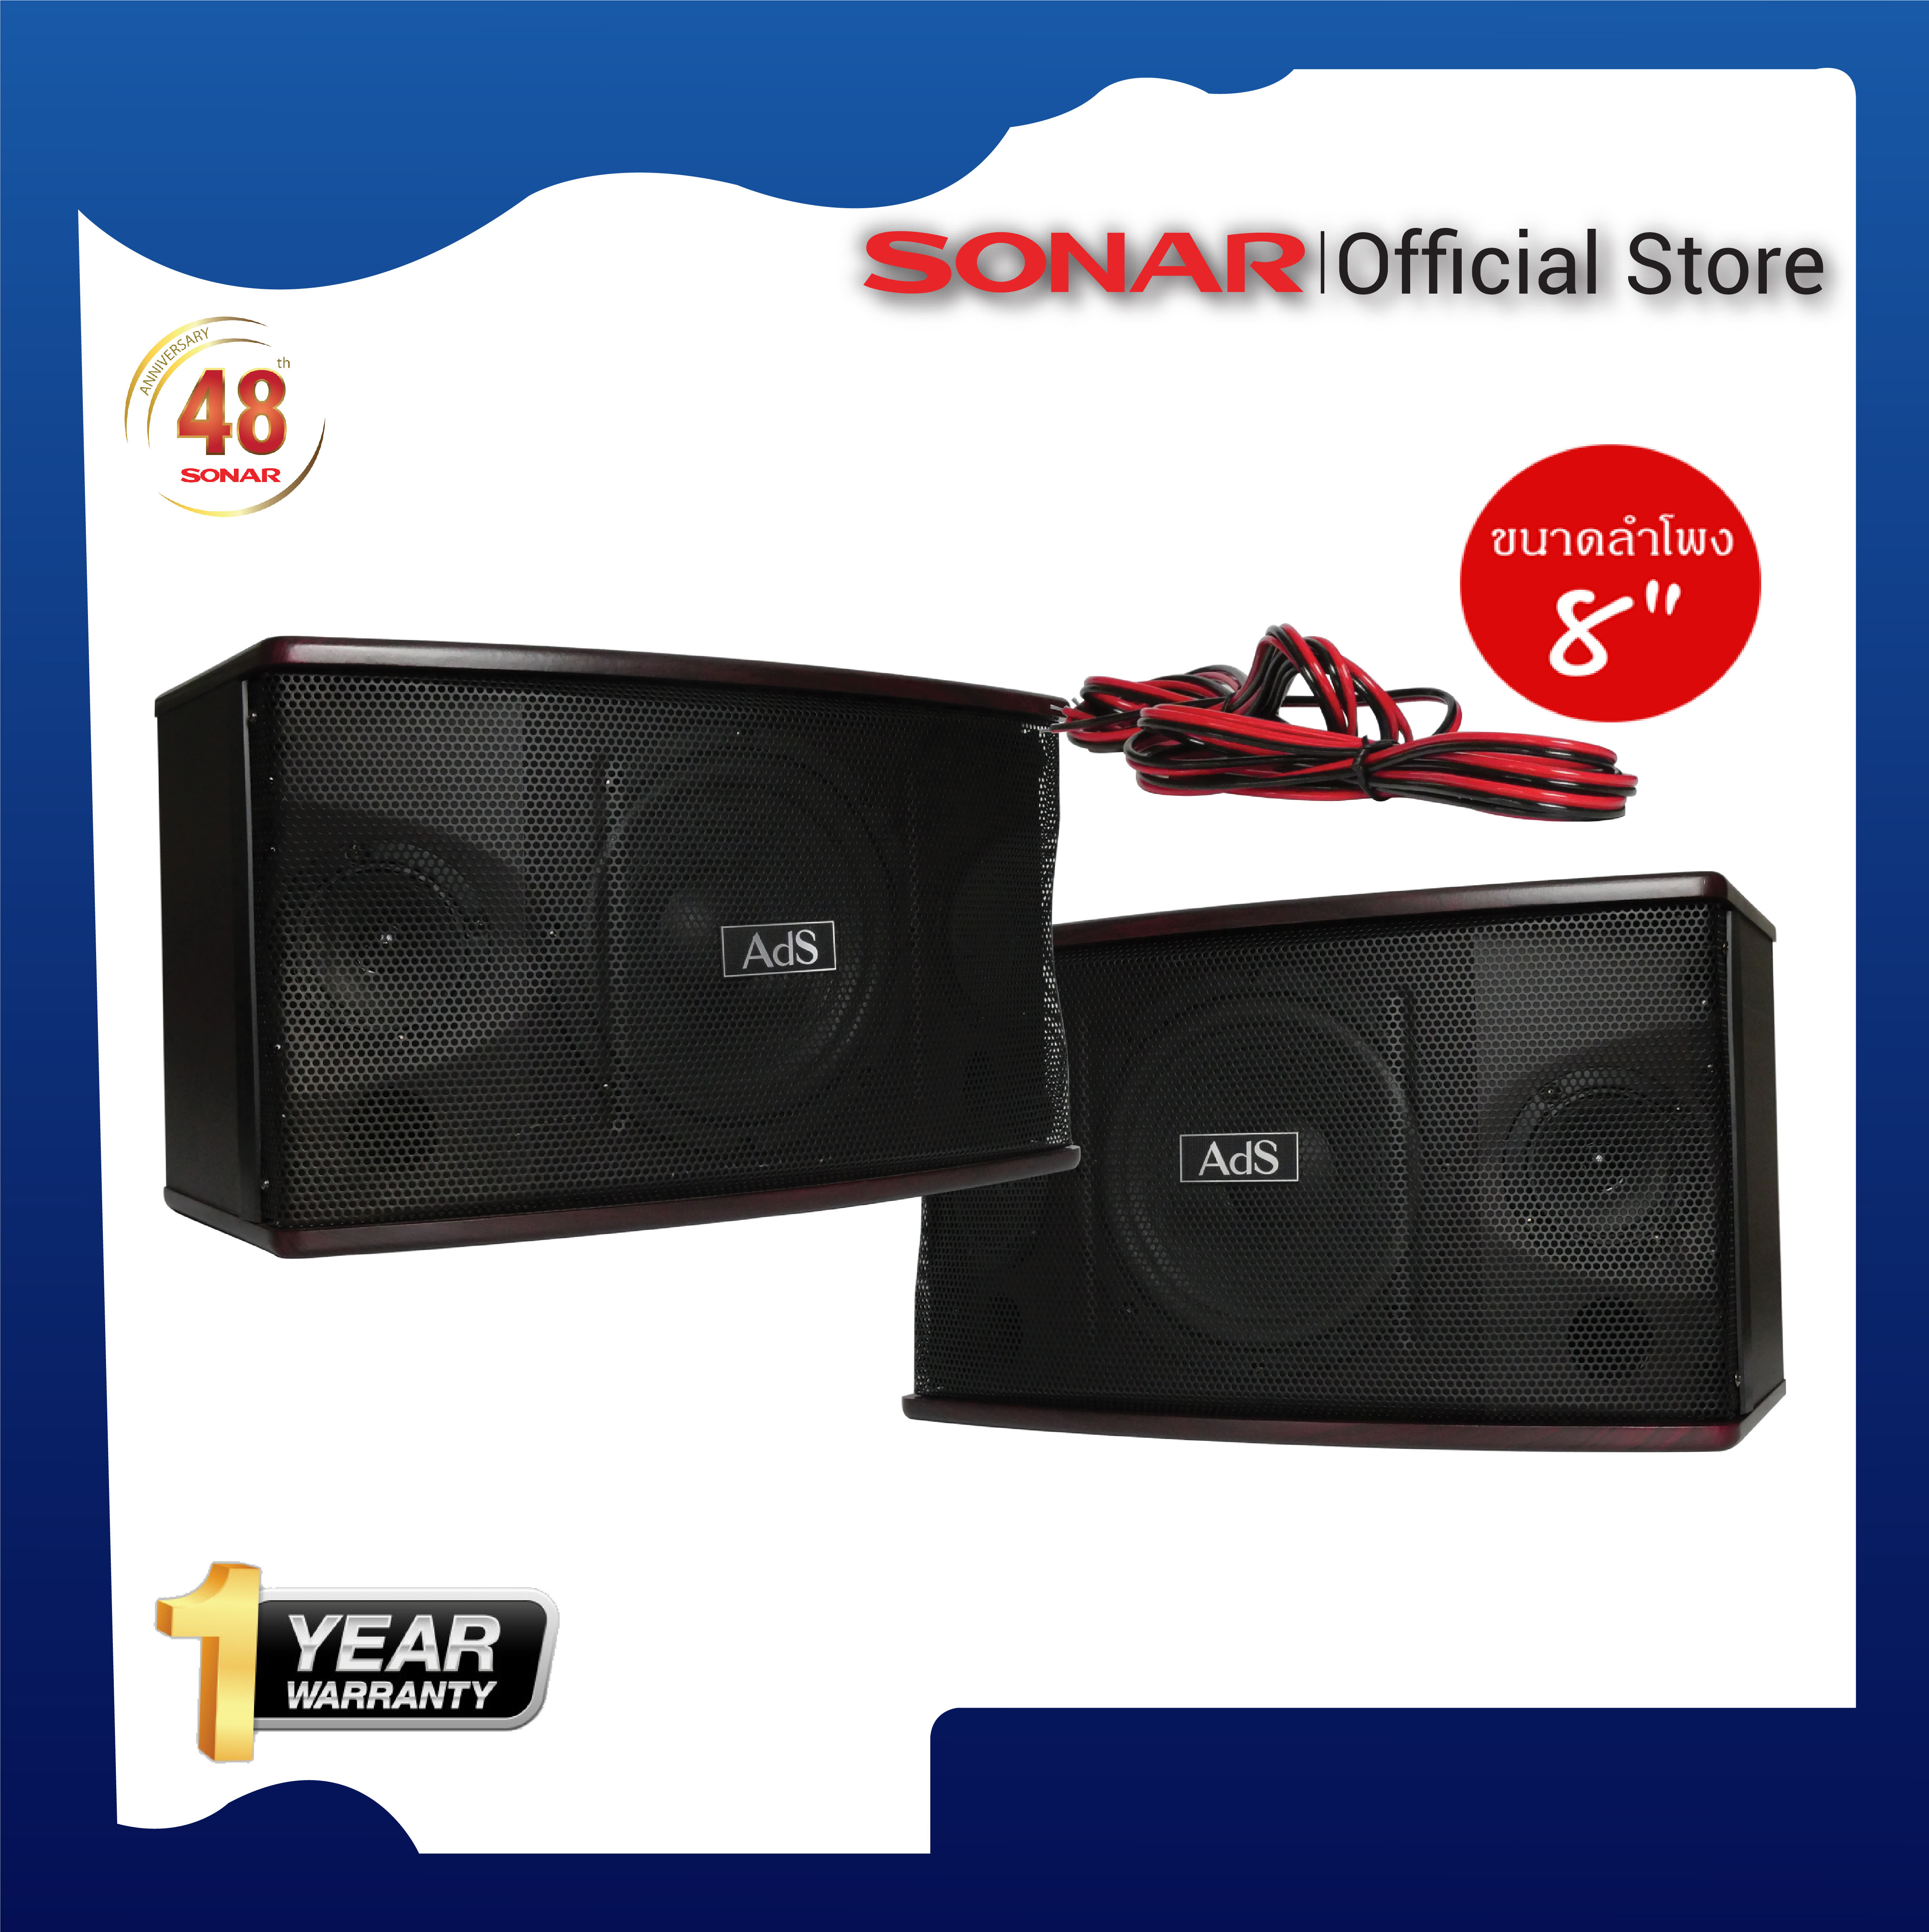 SONAR Ads Speaker ลำโพง ตู้ลำโพง ลำโพงคู่ ลำโพงกลางแจ้ง ลำโพงต่อขยาย ลำโพงสนาม ลำโพงขนาดใหญ่ ลำโพงขยายเสียง รุ่น KS-351 ขนาด 8 นิ้ว